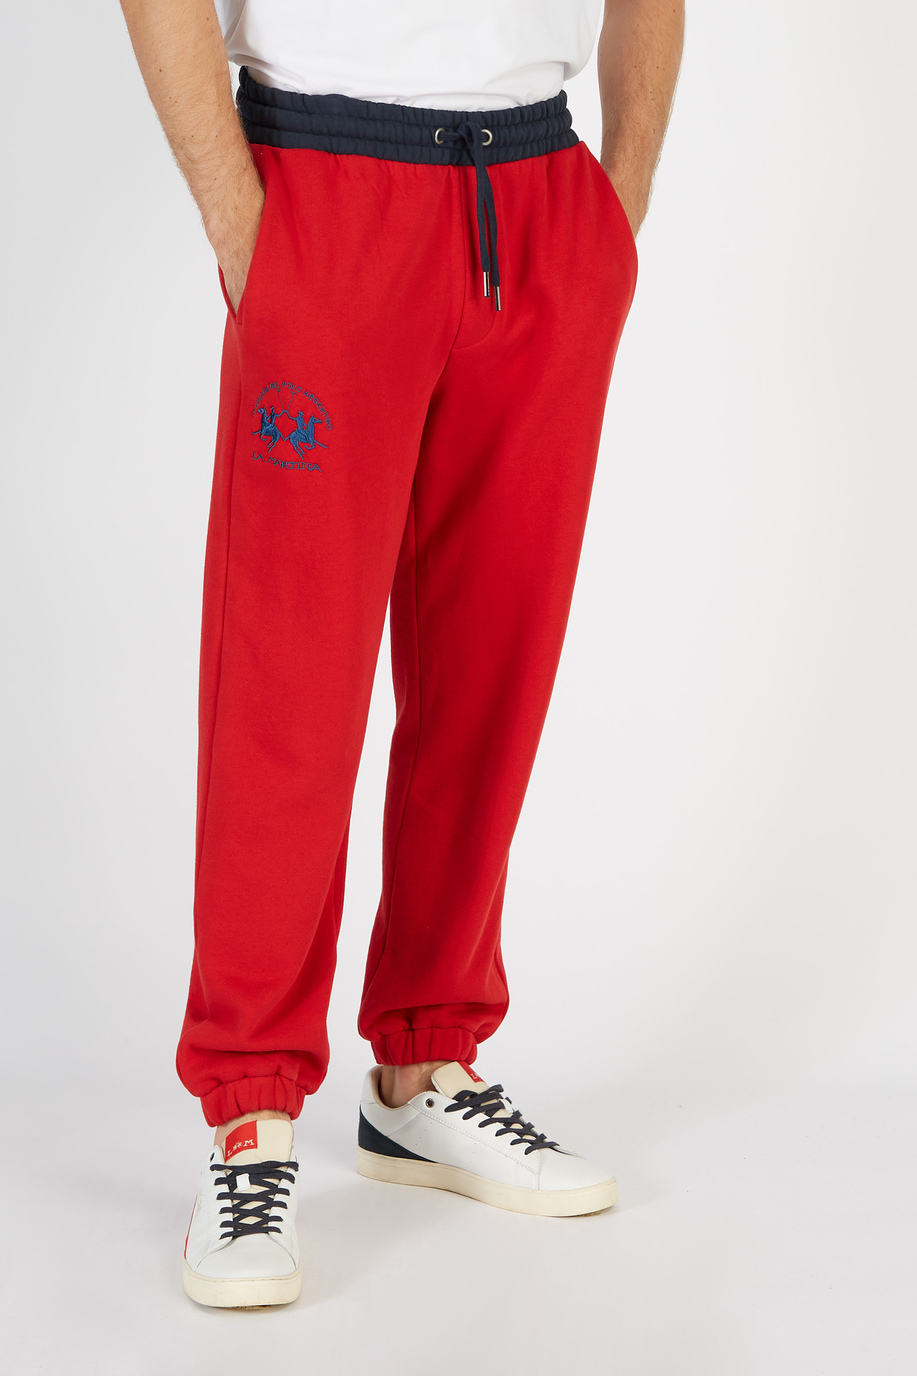 Pantalone da uomo modello jogger in cotone comfort fit - Clubhouse outfit | La Martina - Official Online Shop